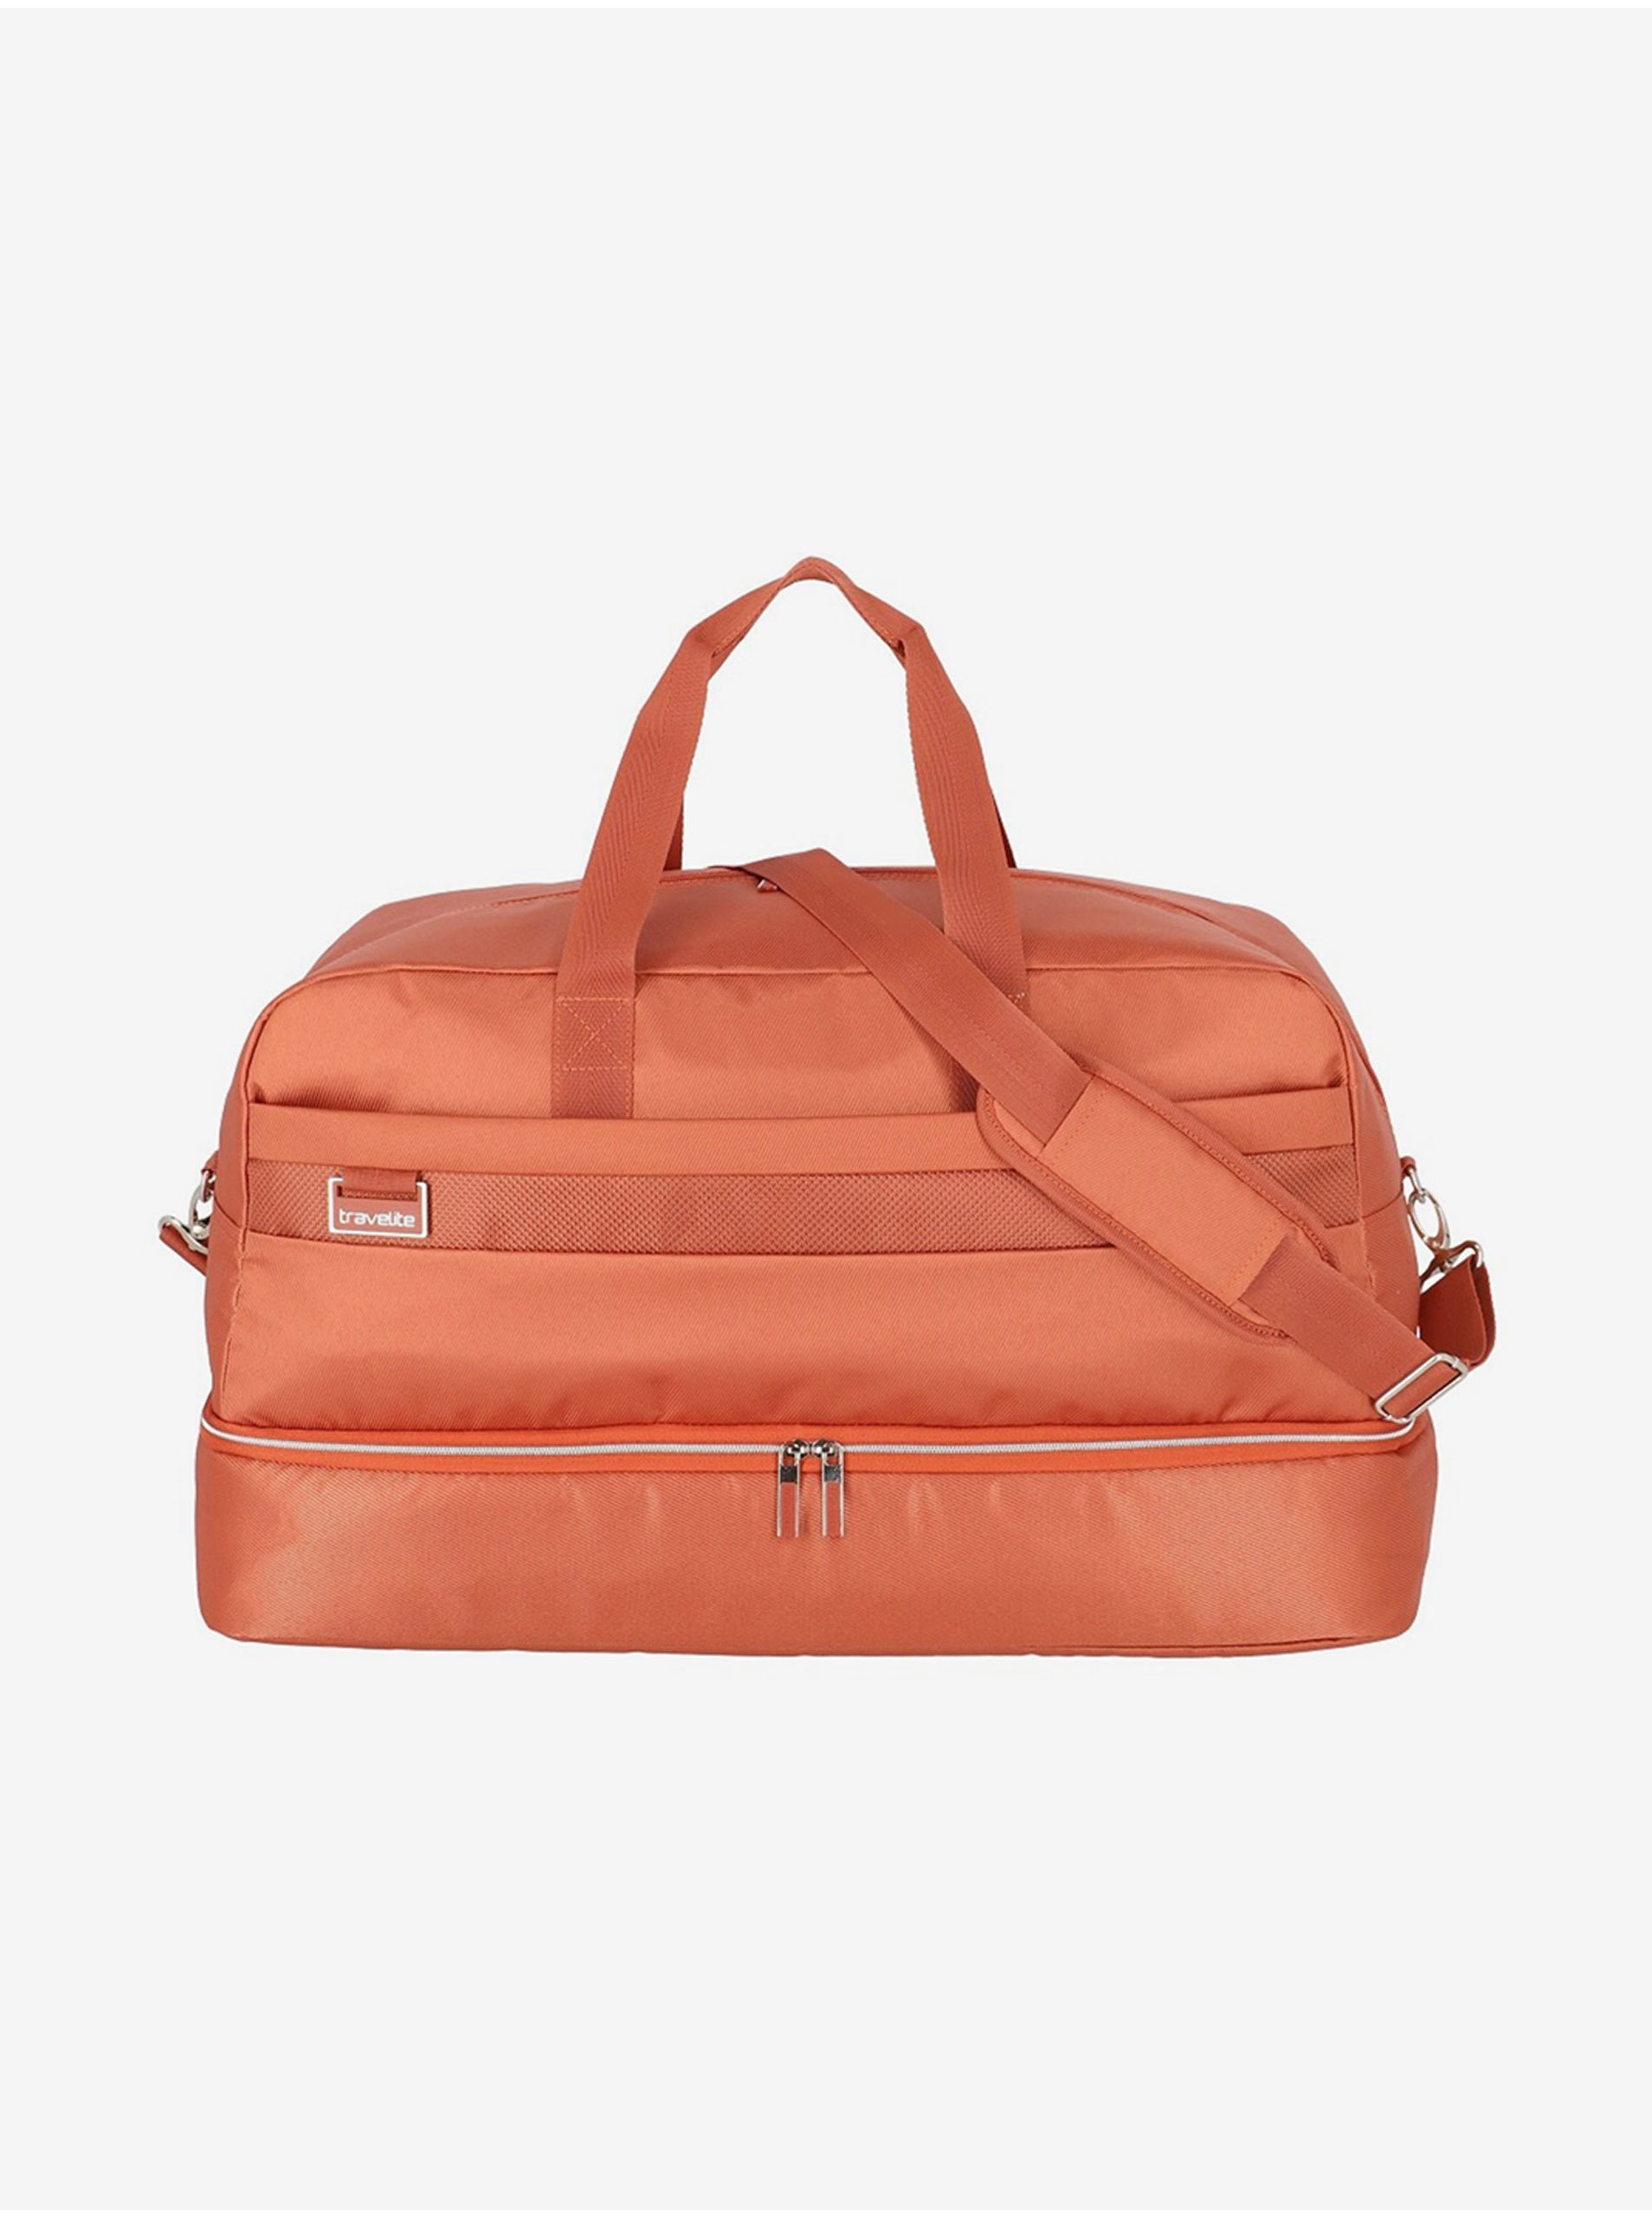 E-shop Oranžová cestovní taška Travelite Miigo Weekender Copper/chutney